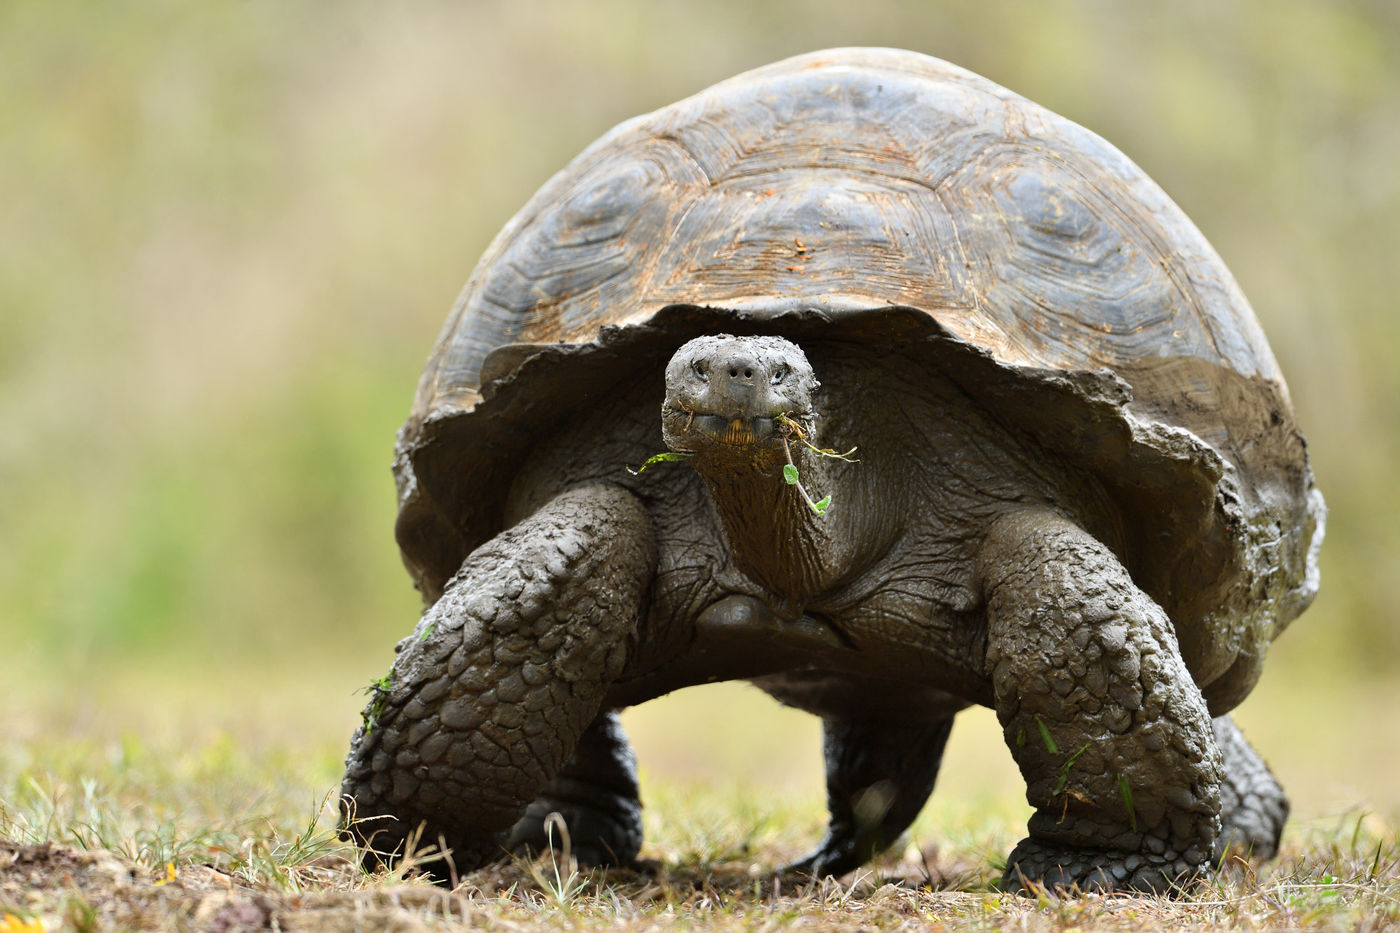 Deze gigant, de Galapagosreuzenschildpad, is een van de meest spectaculaire endemen van het eiland! © Yves Adams